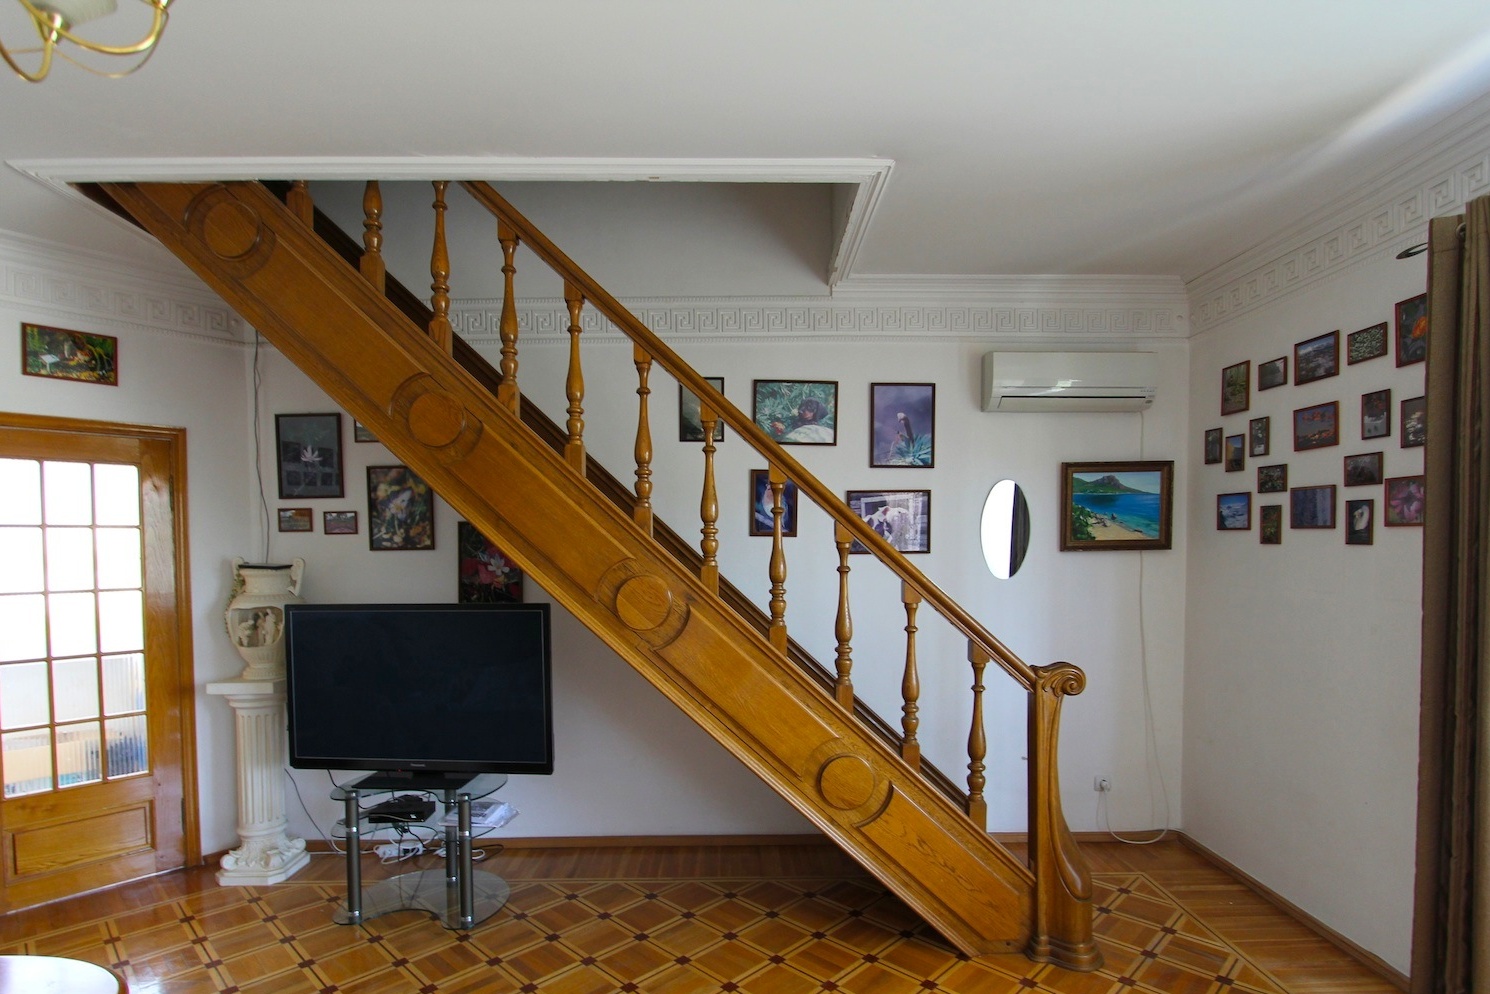 Treppe zum Dachboden vom ersten Stock